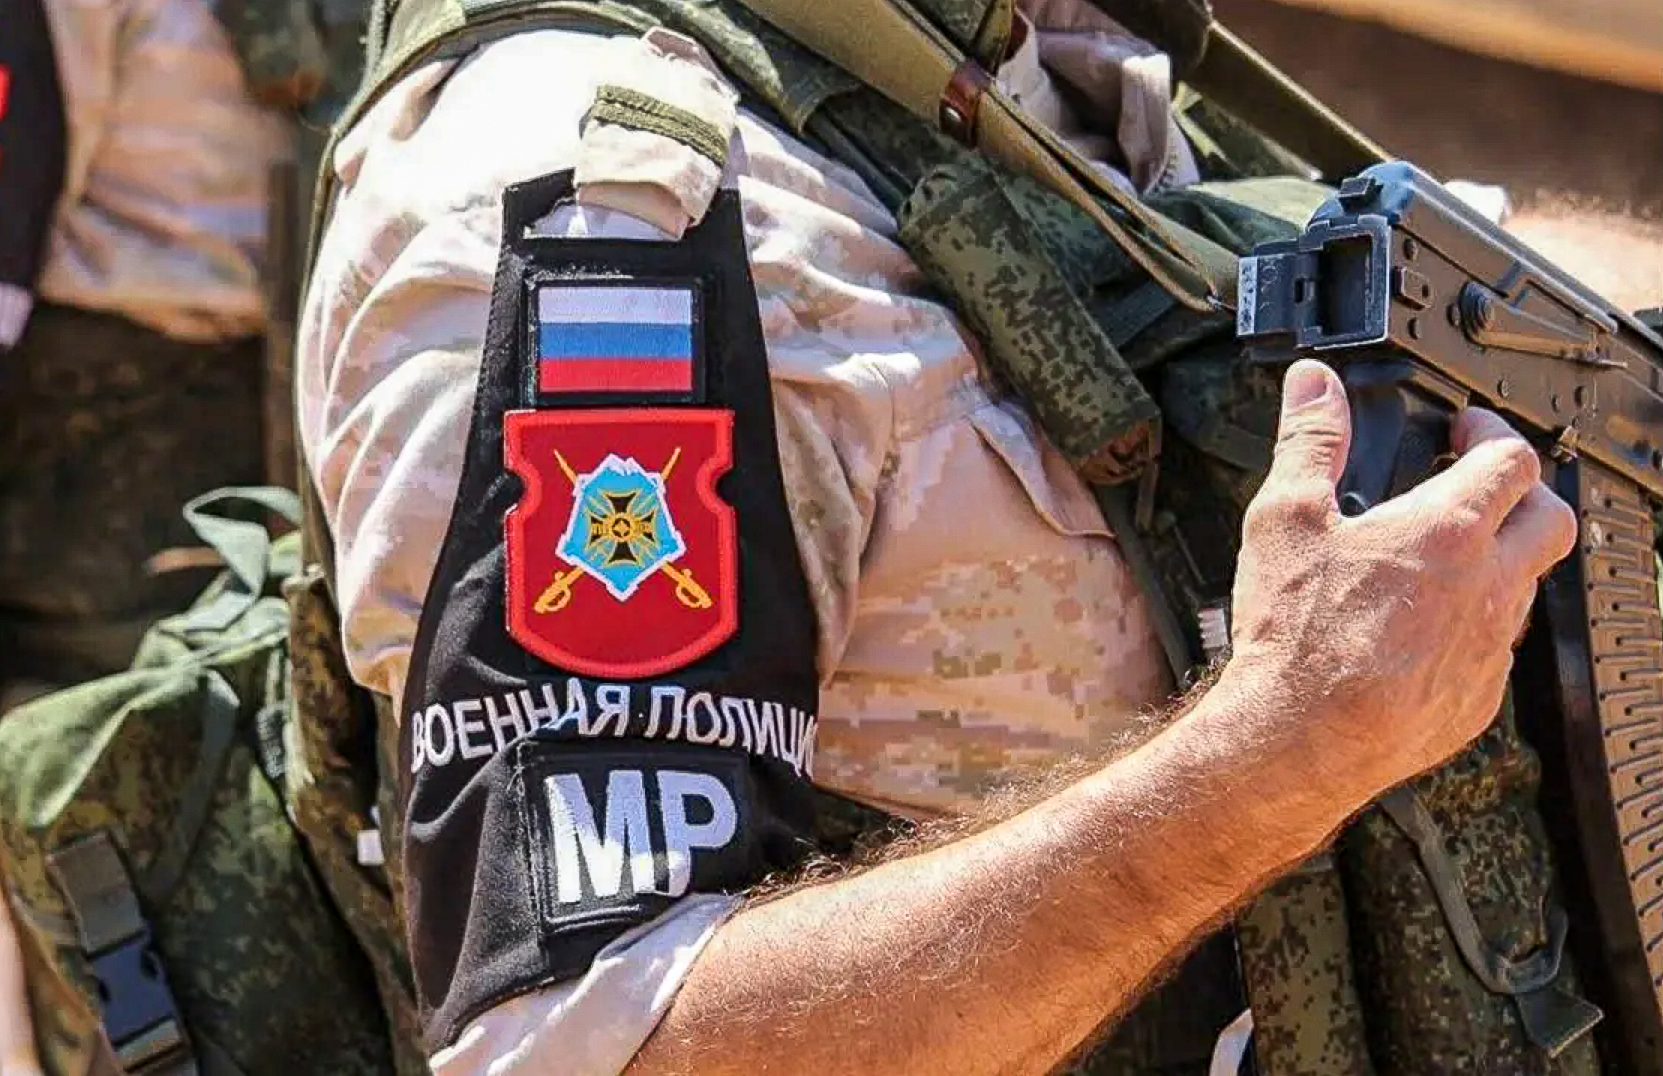 «Красные шапки» — военная полиция РФ, которая в Сирии с риском для жизни выполняет большой объём работ и заслужила громадную благодарность местных жителей